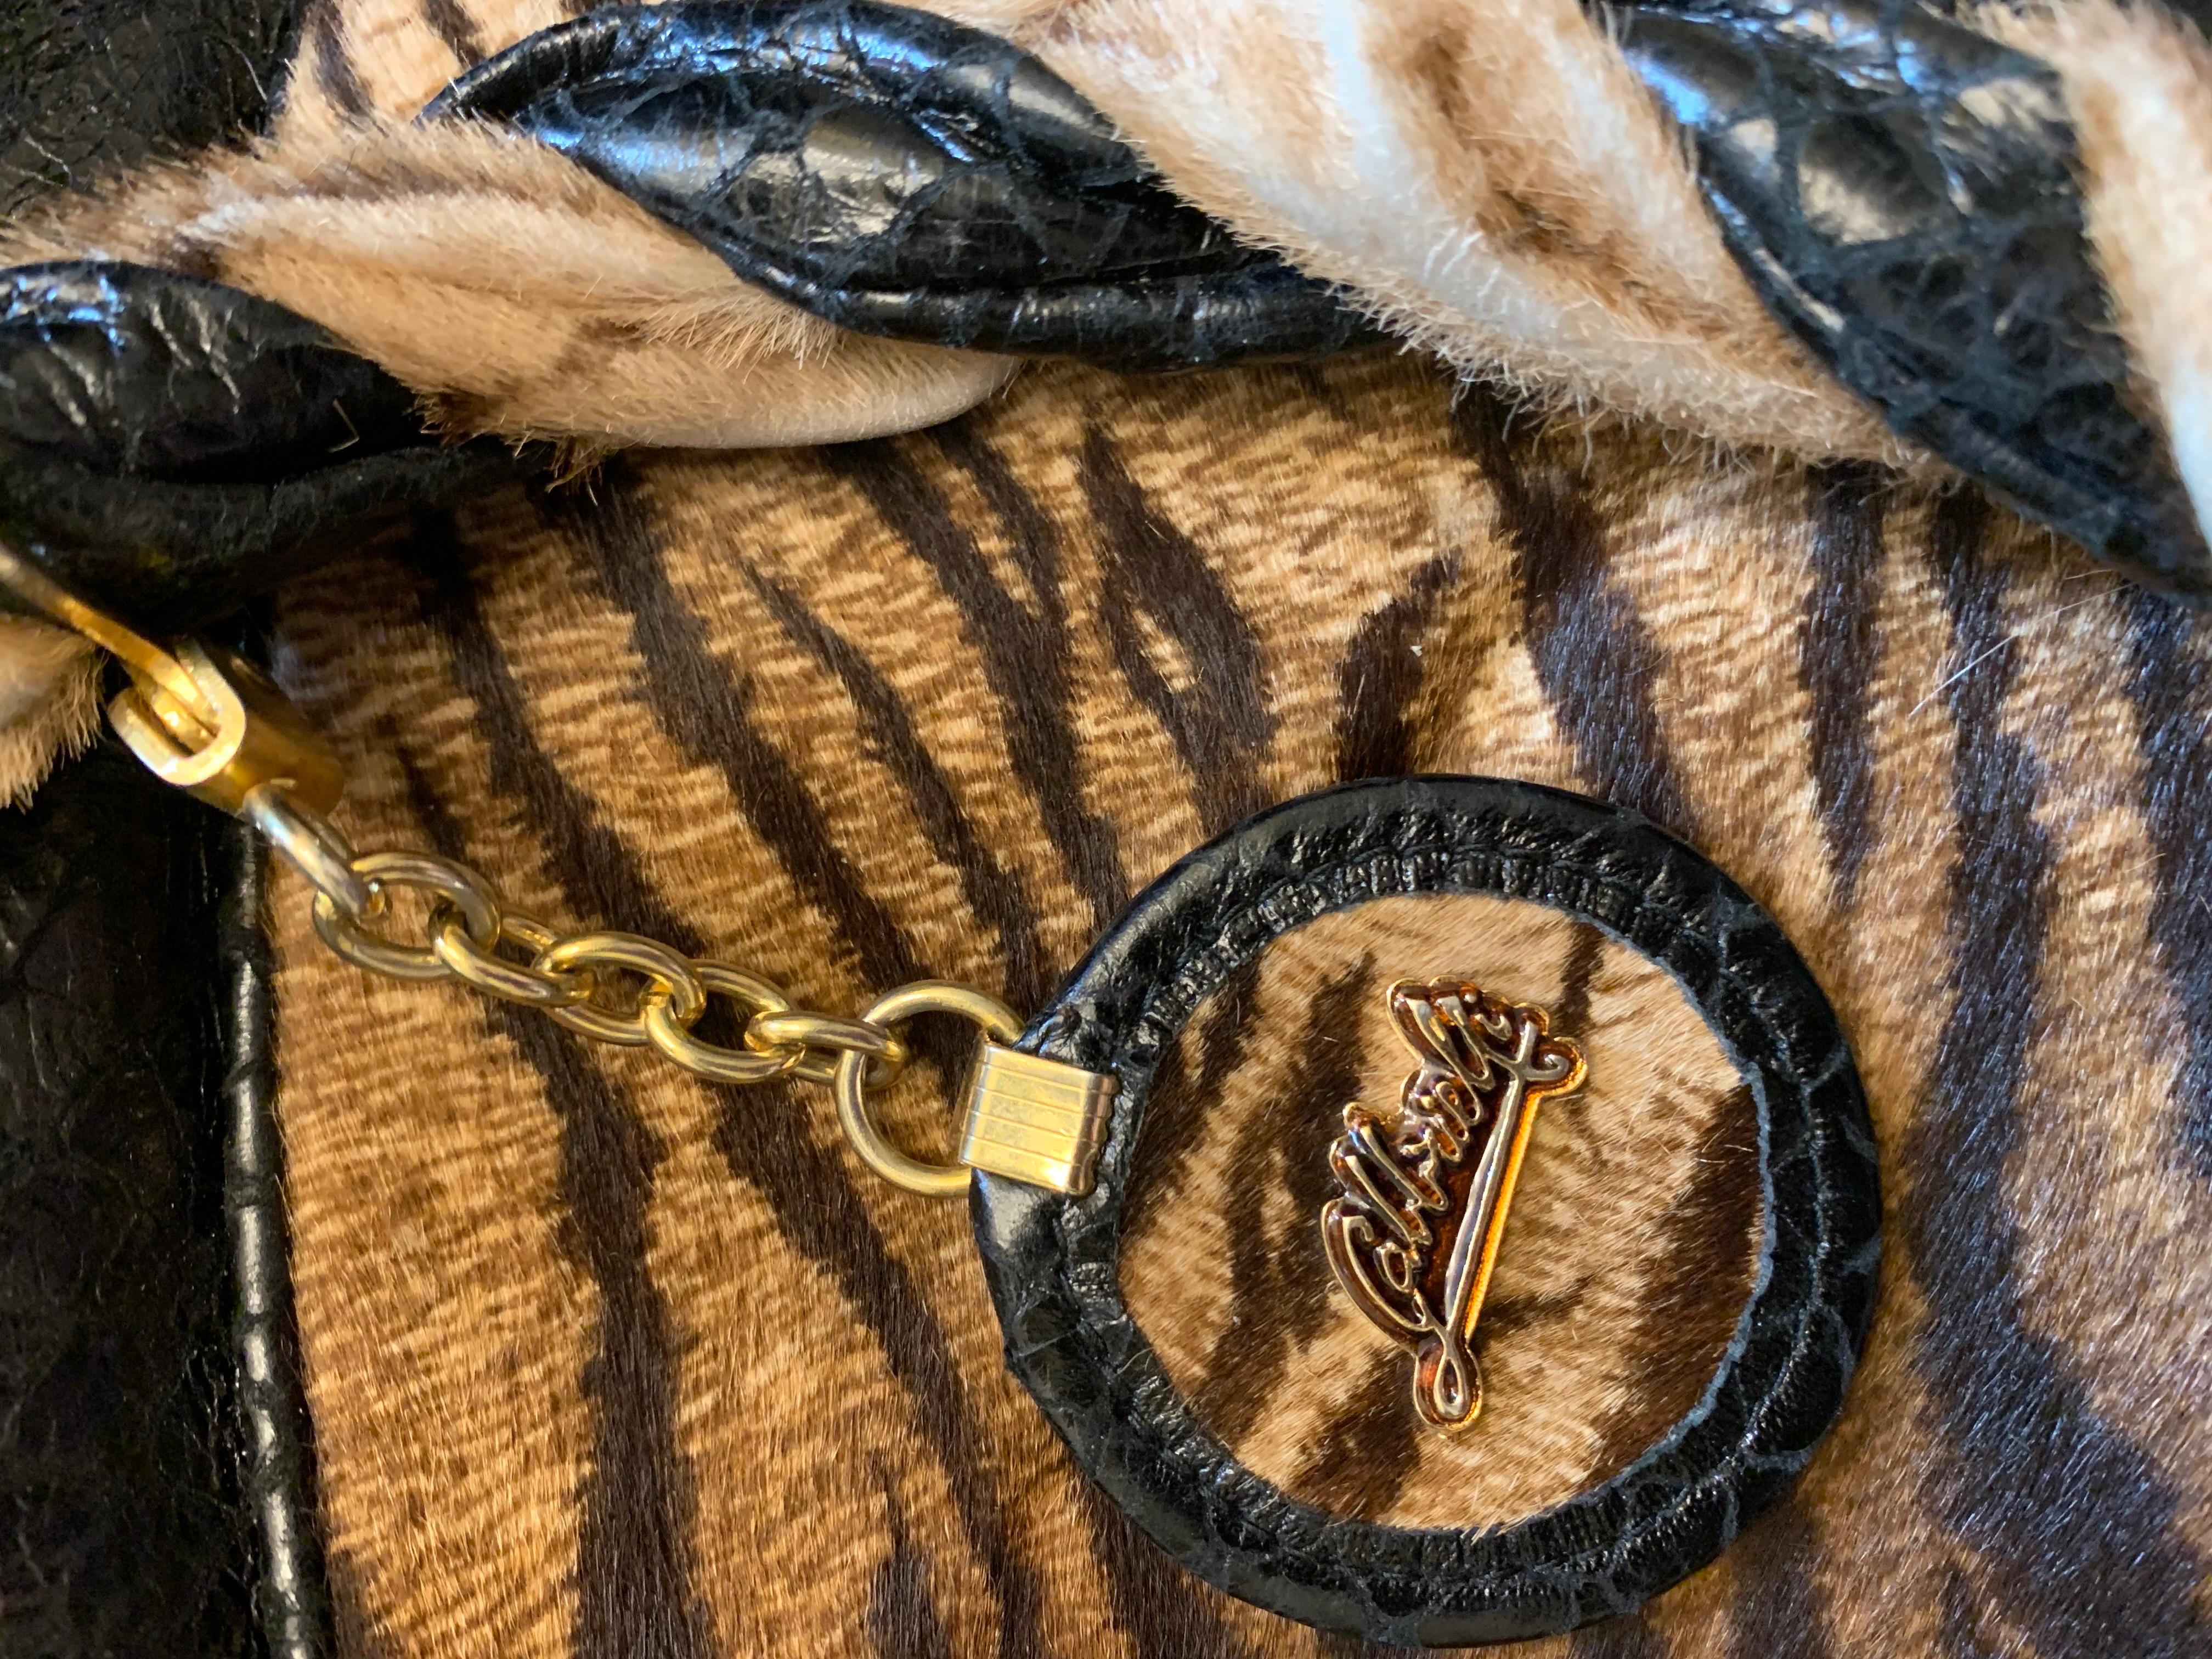 Eine alte Handtasche in Form eines Kanus aus den 1990er Jahren vom italienischen Hersteller Gabbrielli aus Florenz. Die Tasche ist ein Mix aus braunem Ponyhaar-Leder mit Zebramuster und schwarzem geprägtem Leder, das wie echte Schlangenhaut